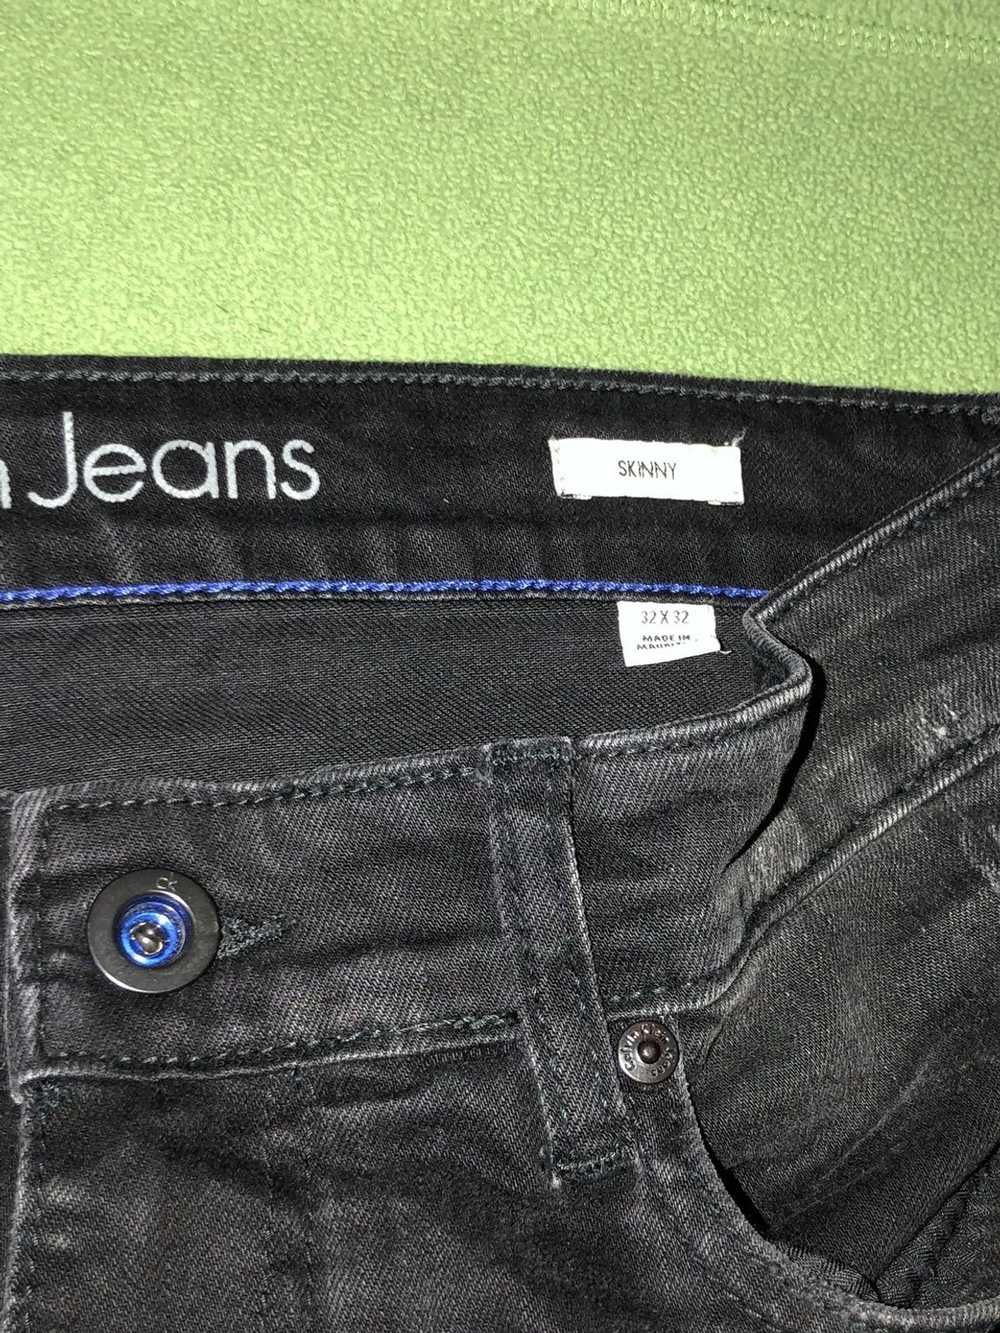 Calvin Klein Biker Jeans - image 3